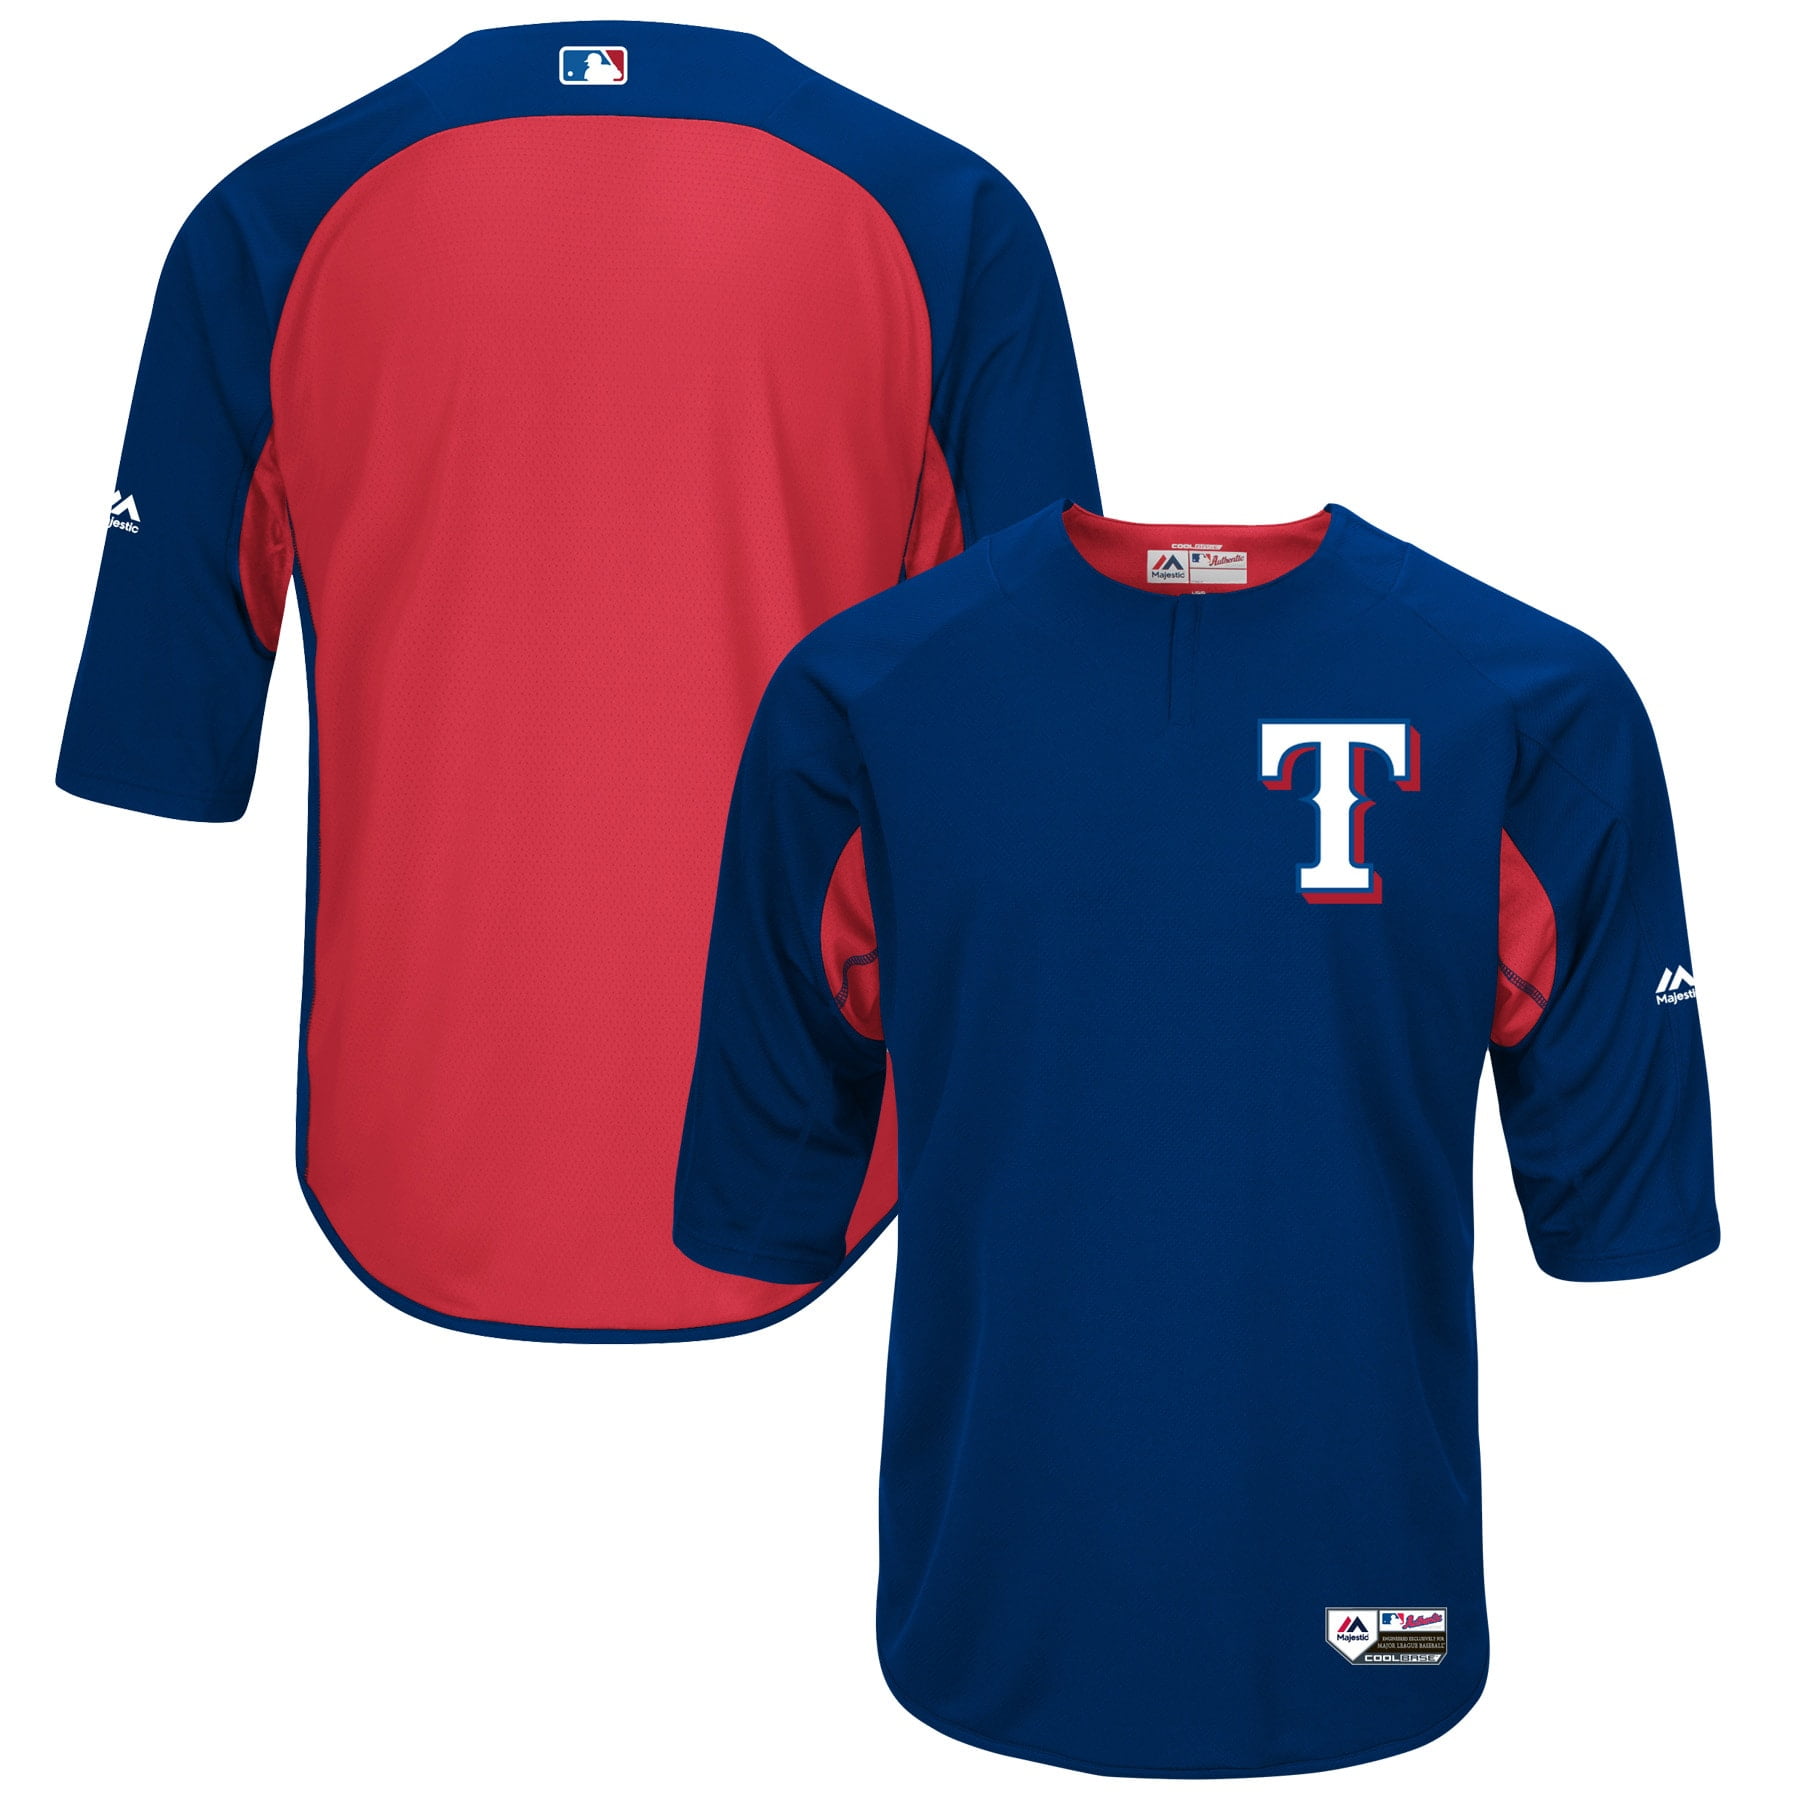 Men's True-Fan White/Royal Texas Rangers Pinstripe Jersey